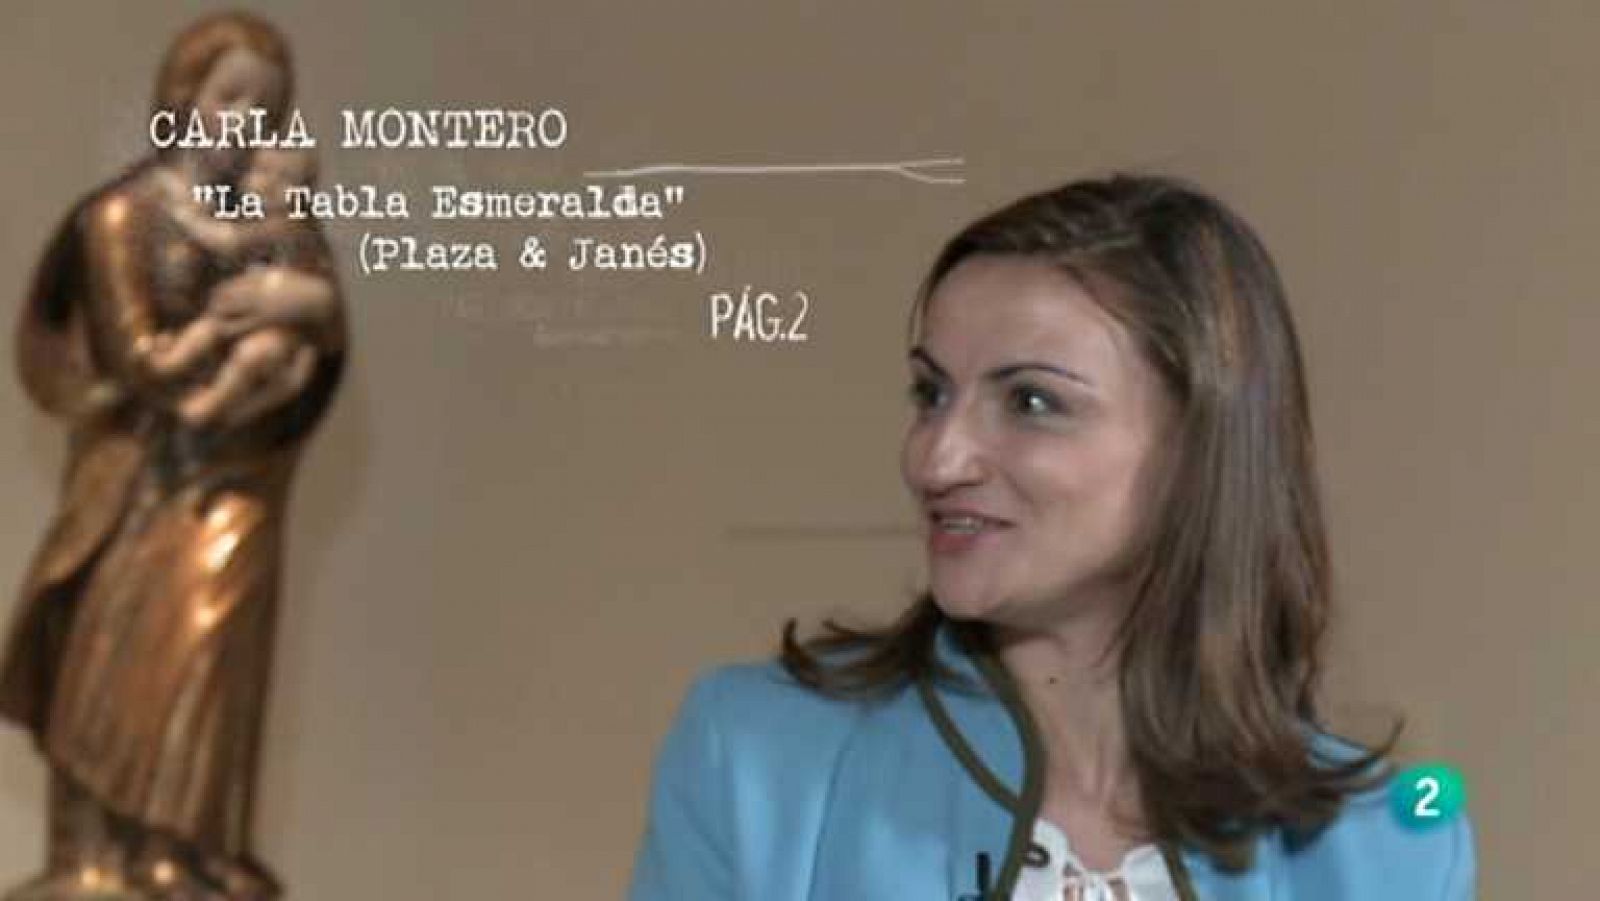 Página 2 - Carla Montero - 27/05/2012